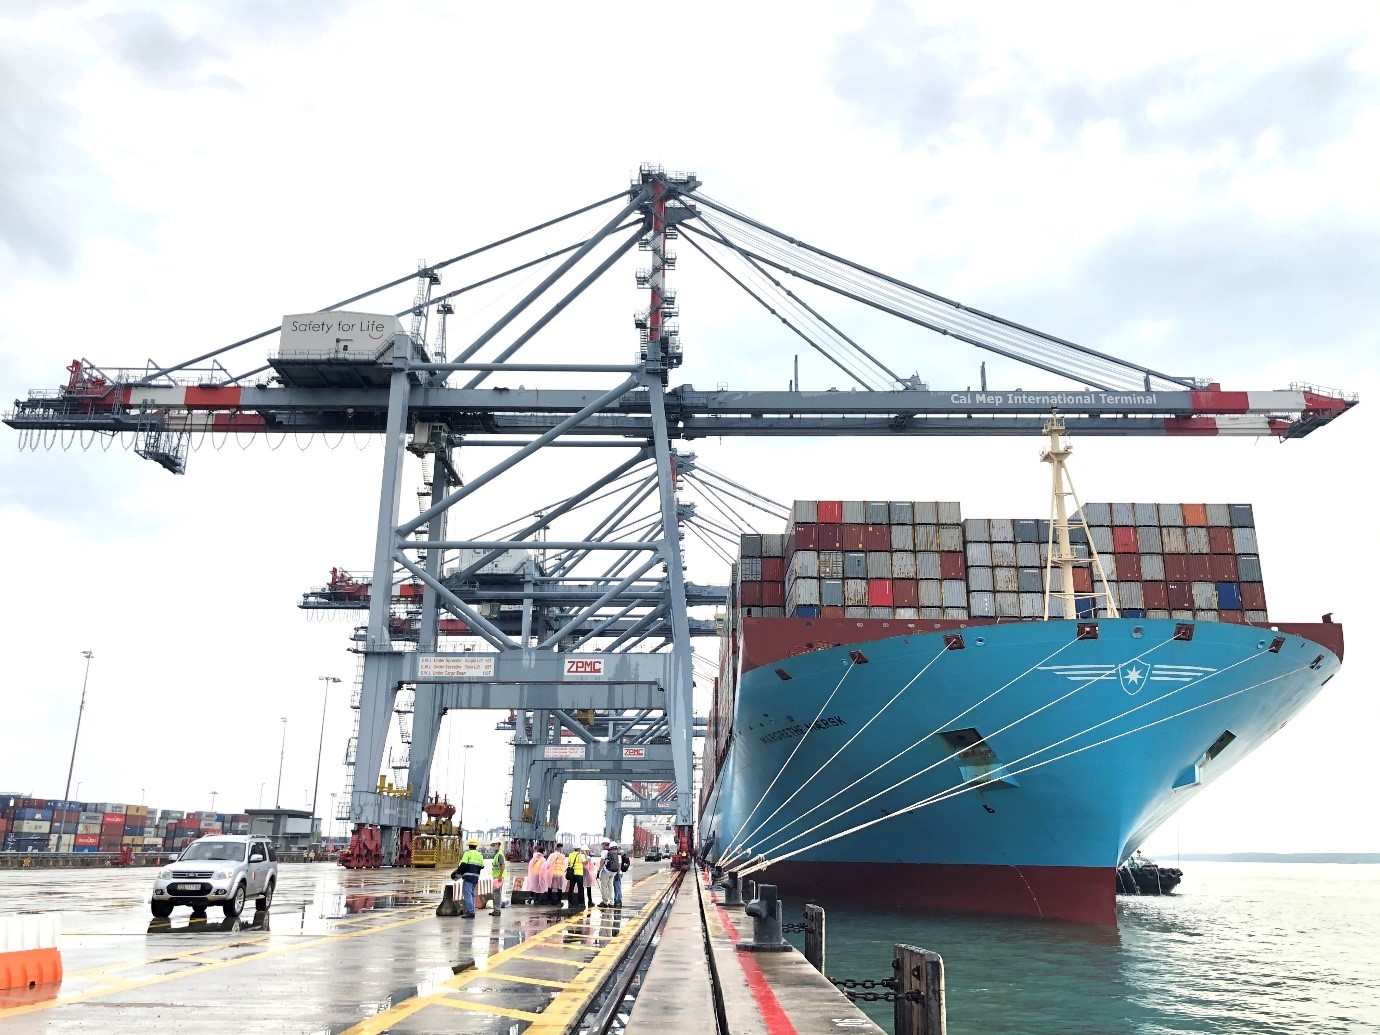 Cảng Quốc Tế Cái Mép (CMIT) tiếp nhận tàu container lớn nhất trọng tải 214,121 tấn được đưa vào Việt Nam khai thác.